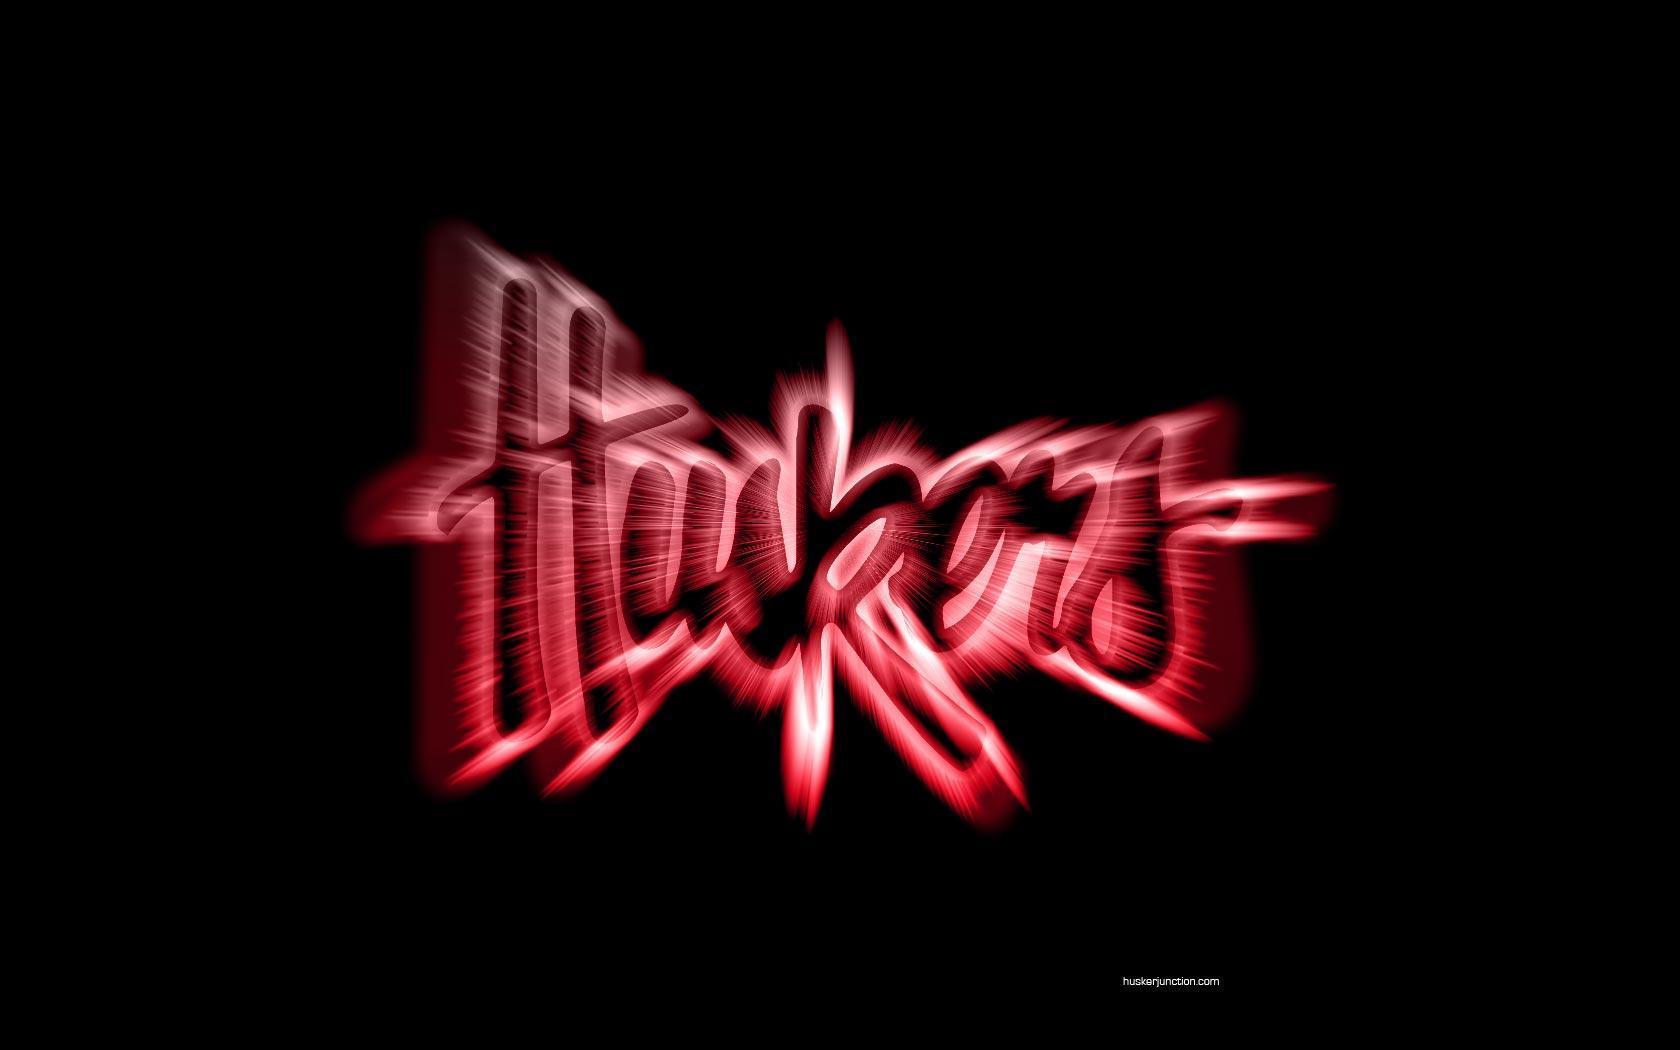 Husker Logo - Nebraska Cornhuskers Wallpaper 9546297 - Fanpop